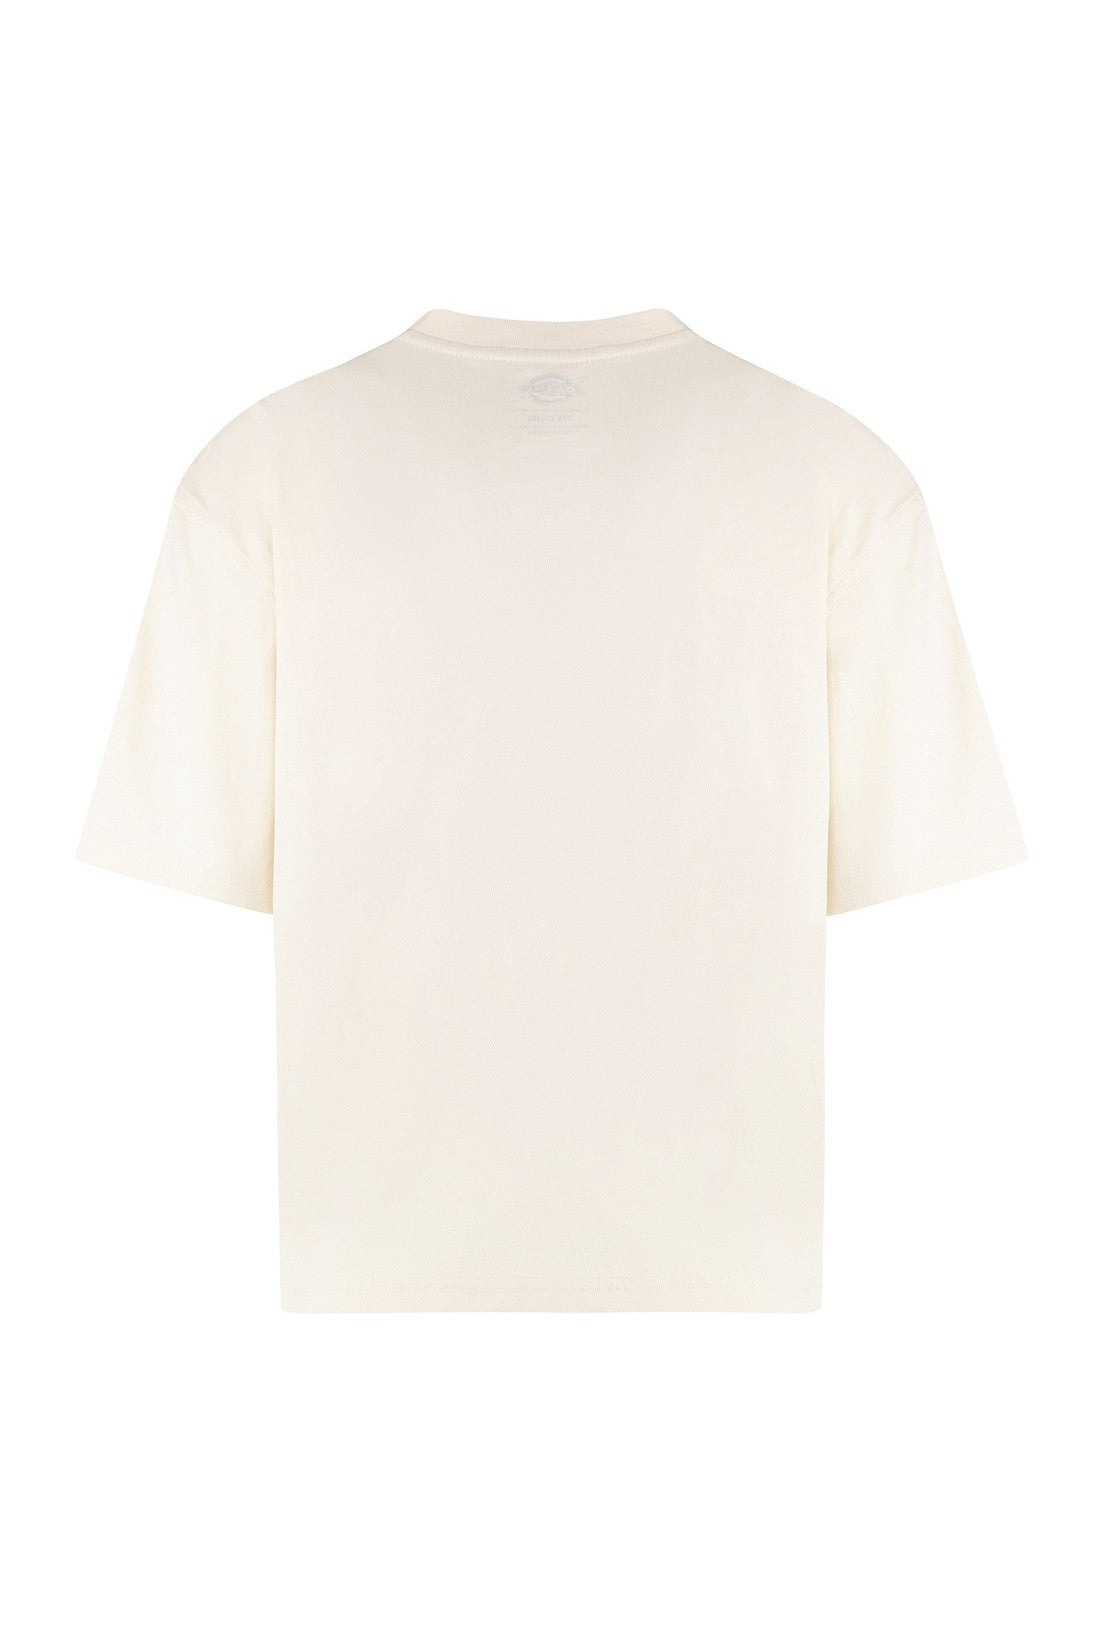 Dickies-OUTLET-SALE-Cotton crew-neck T-shirt-ARCHIVIST